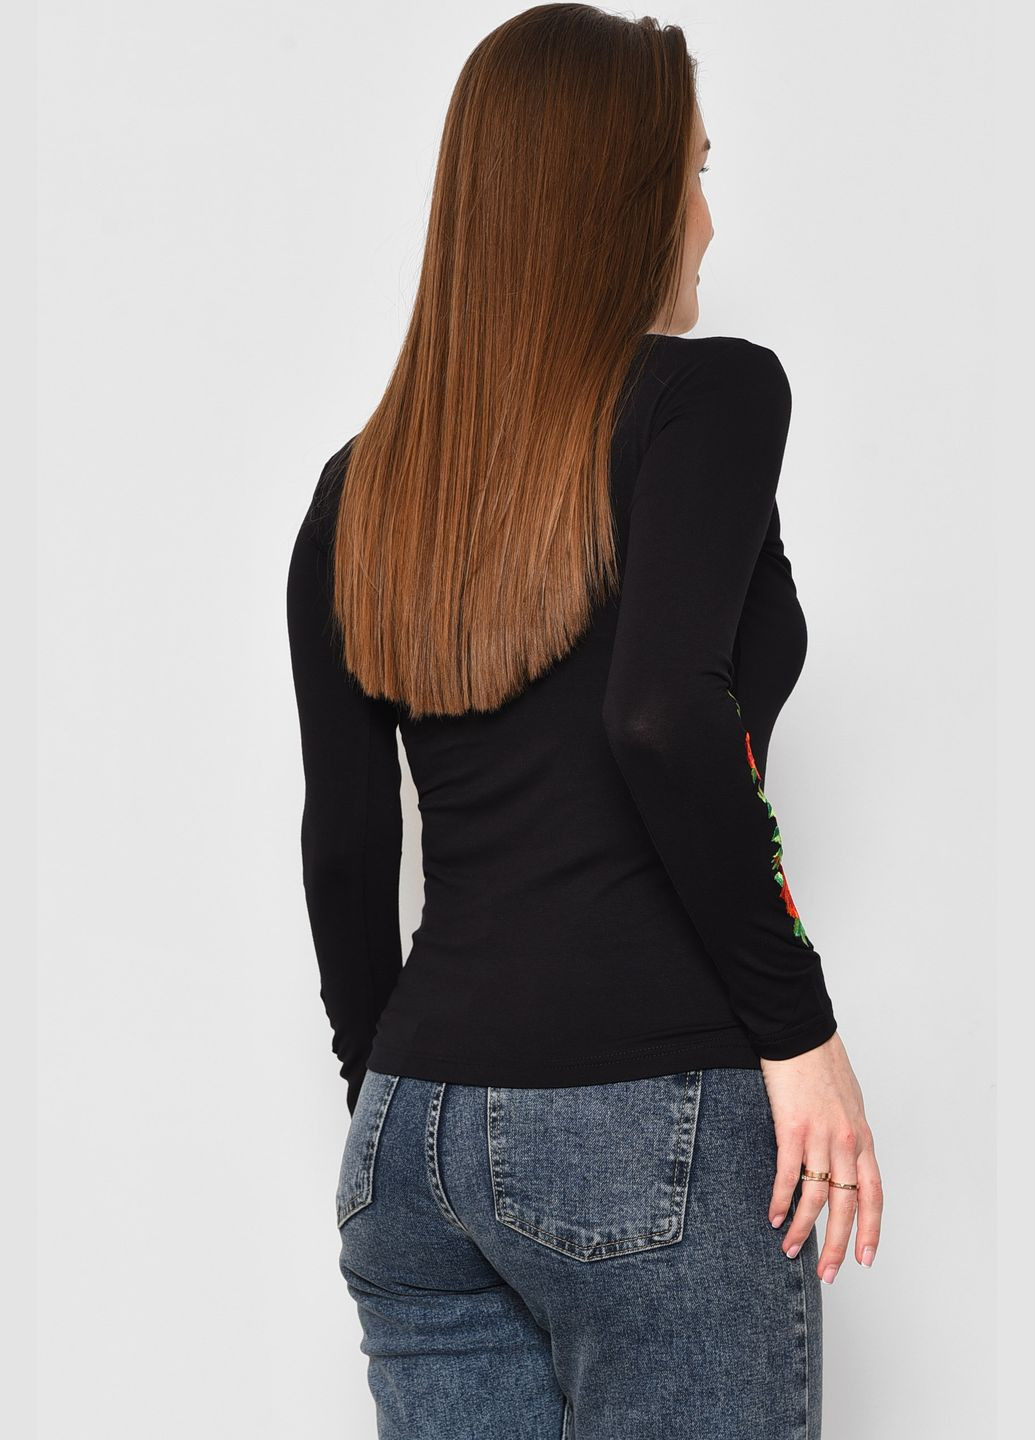 Черный демисезонный кофта вышиванка женская черного цвета пуловер Let's Shop